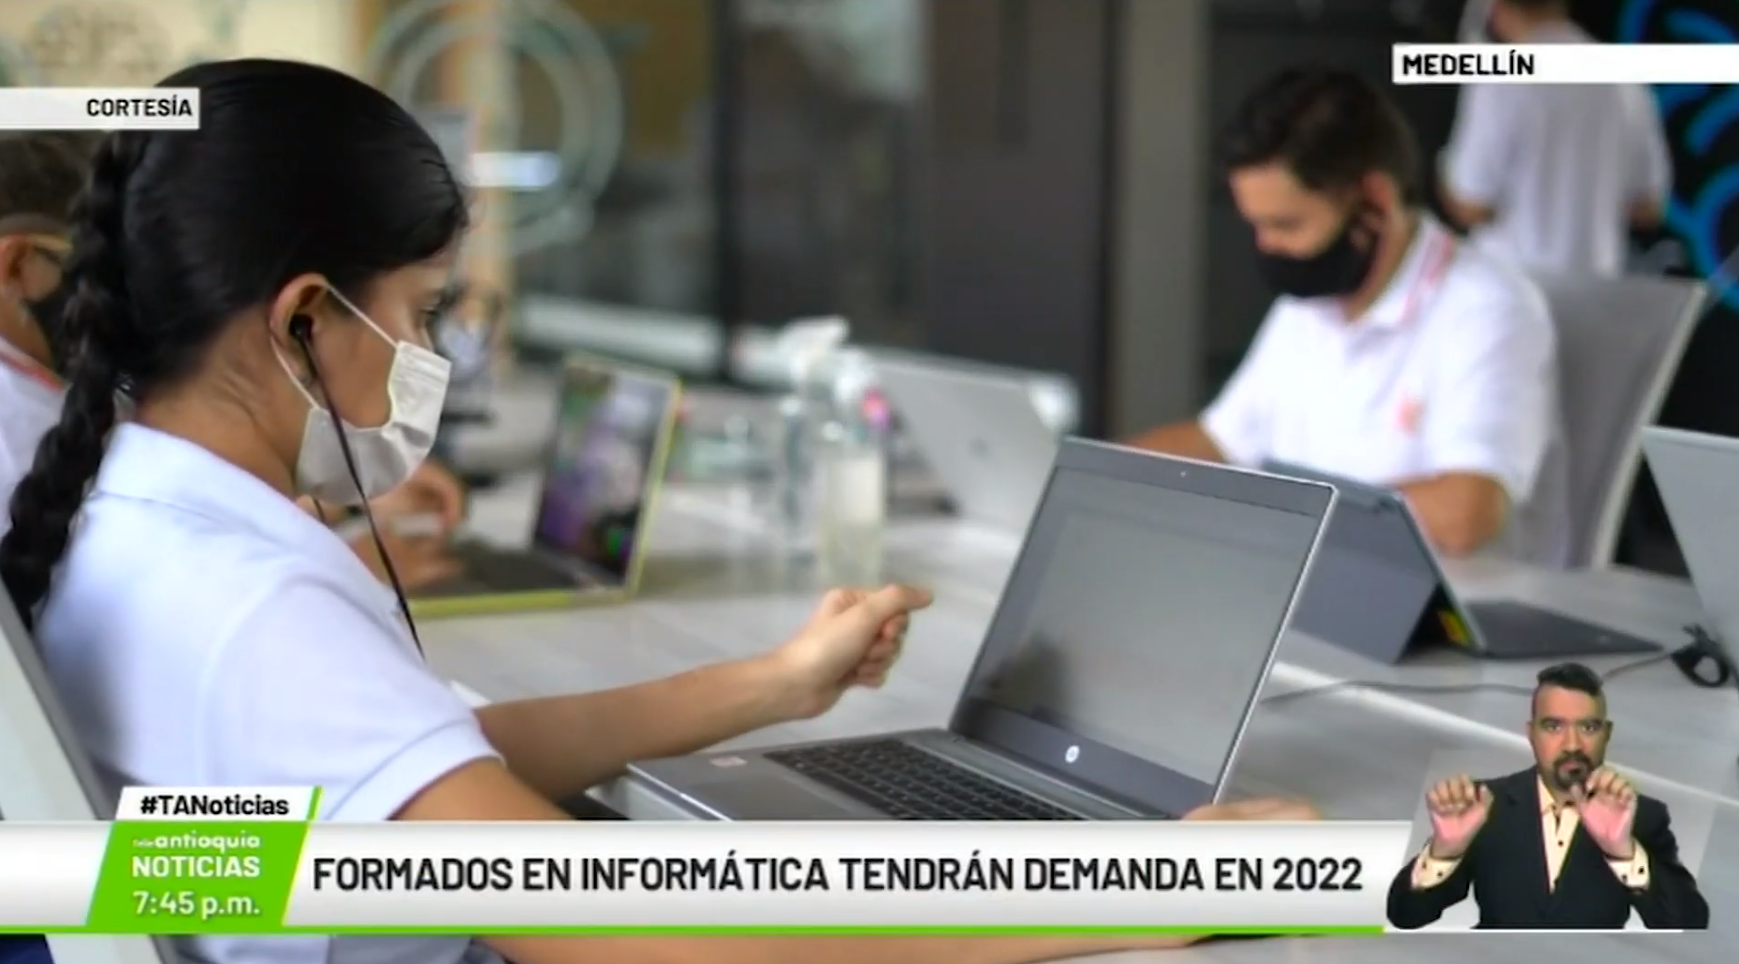 Formados en informática tendrán demanda en 2022